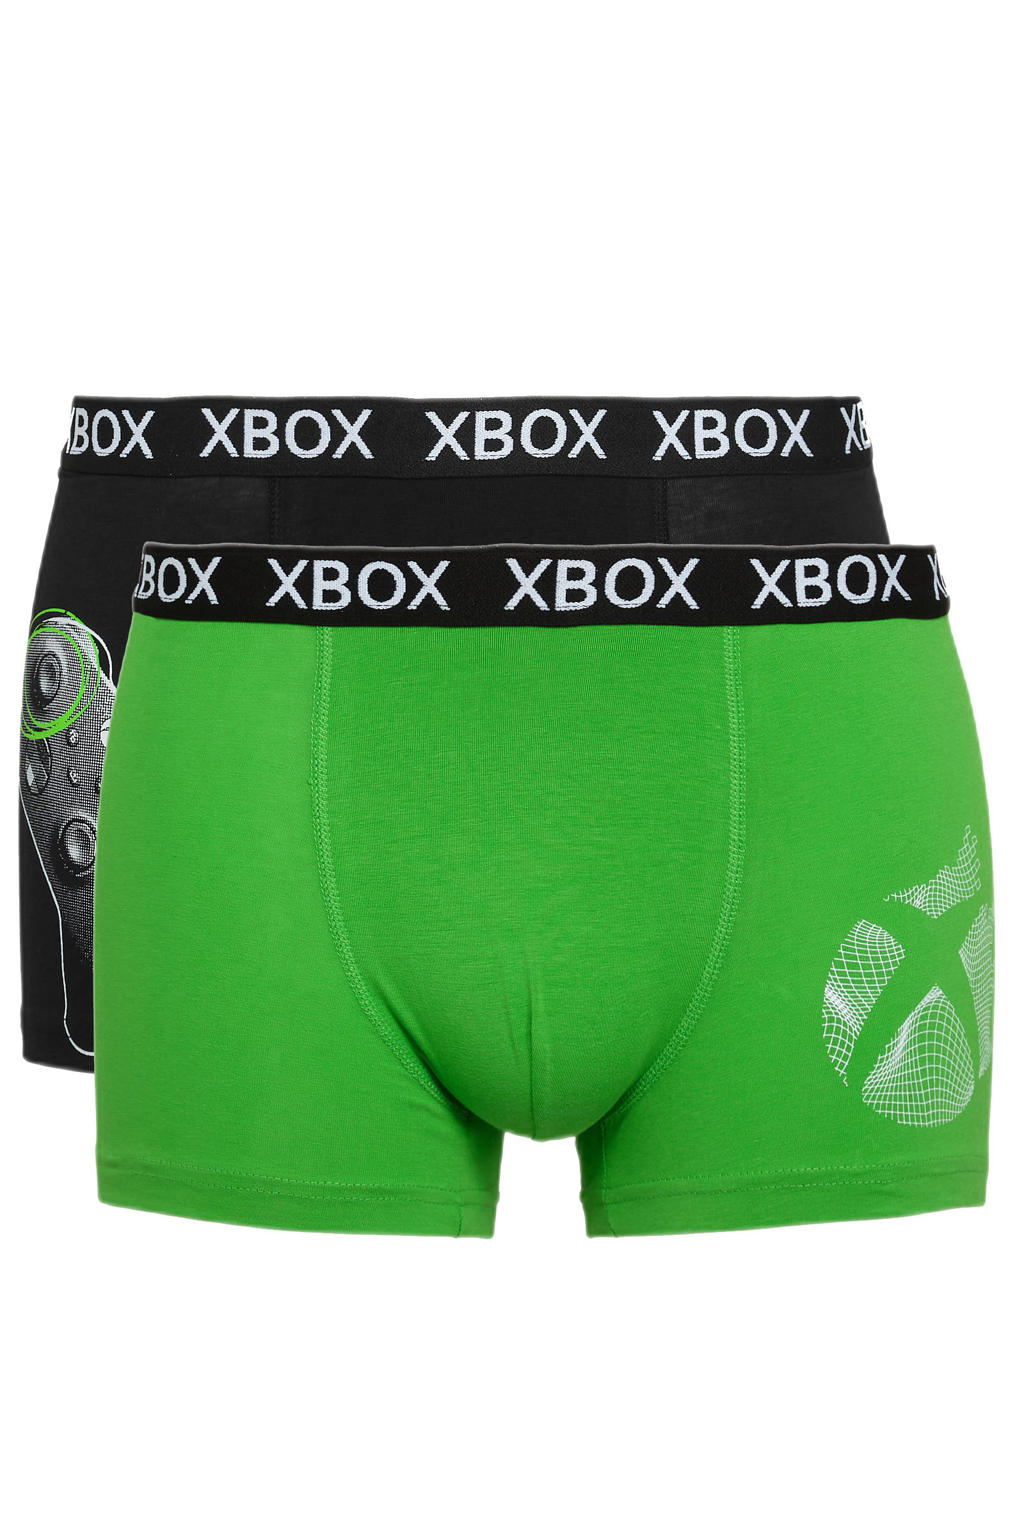 C&A   boxershort Xbox - set van 2 groen/zwart